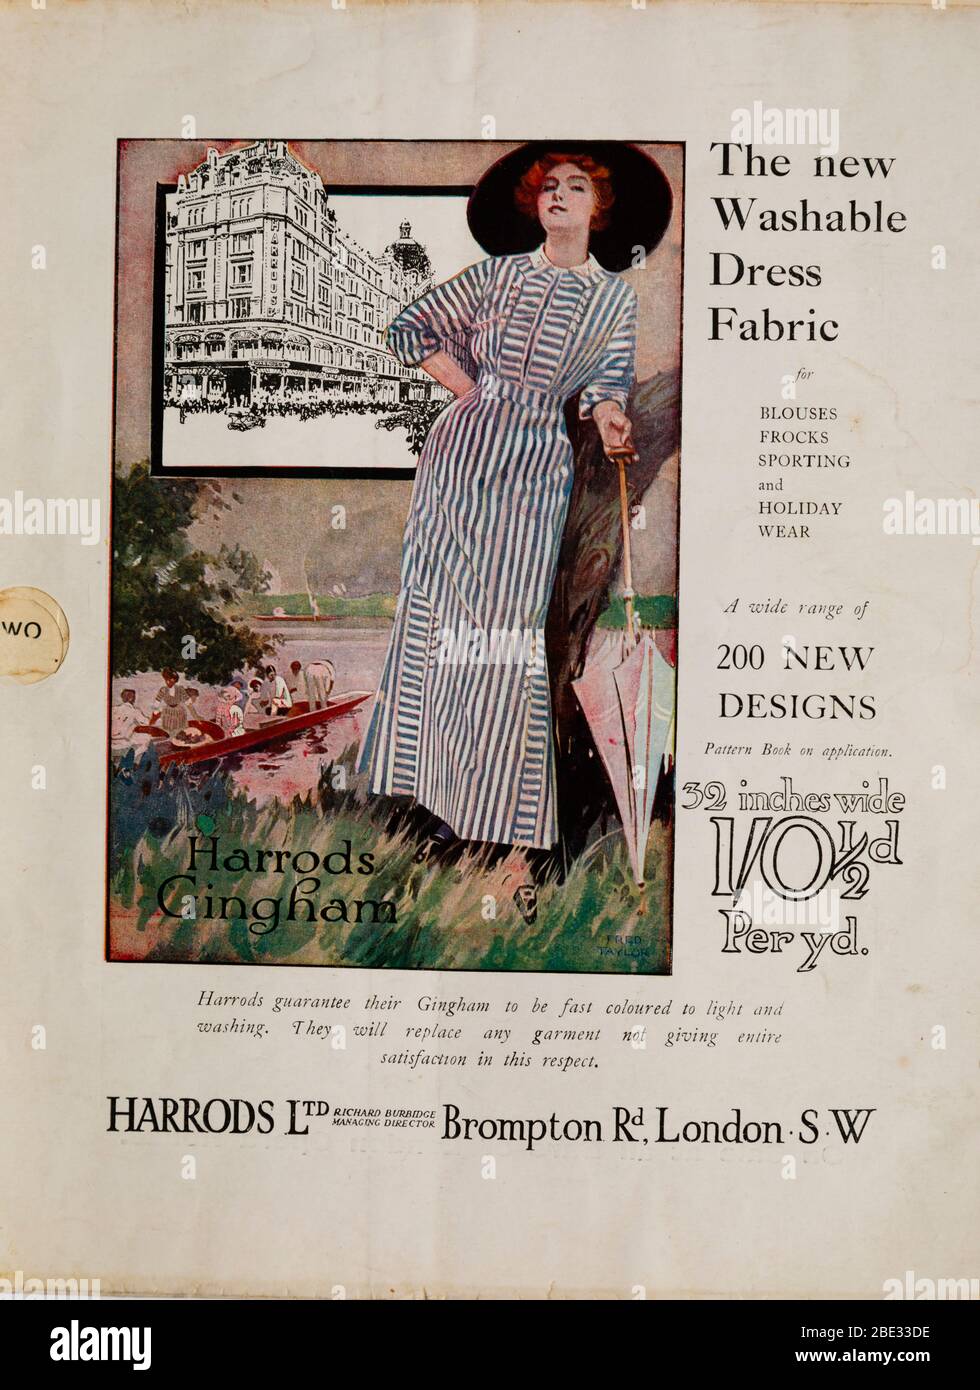 Harrods Gingham Stoff Werbung in der Ausgabe 1912 von The Ladies Field, The London Opera House, Wochenzeitschrift Mode und Gesellschaft. Stockfoto